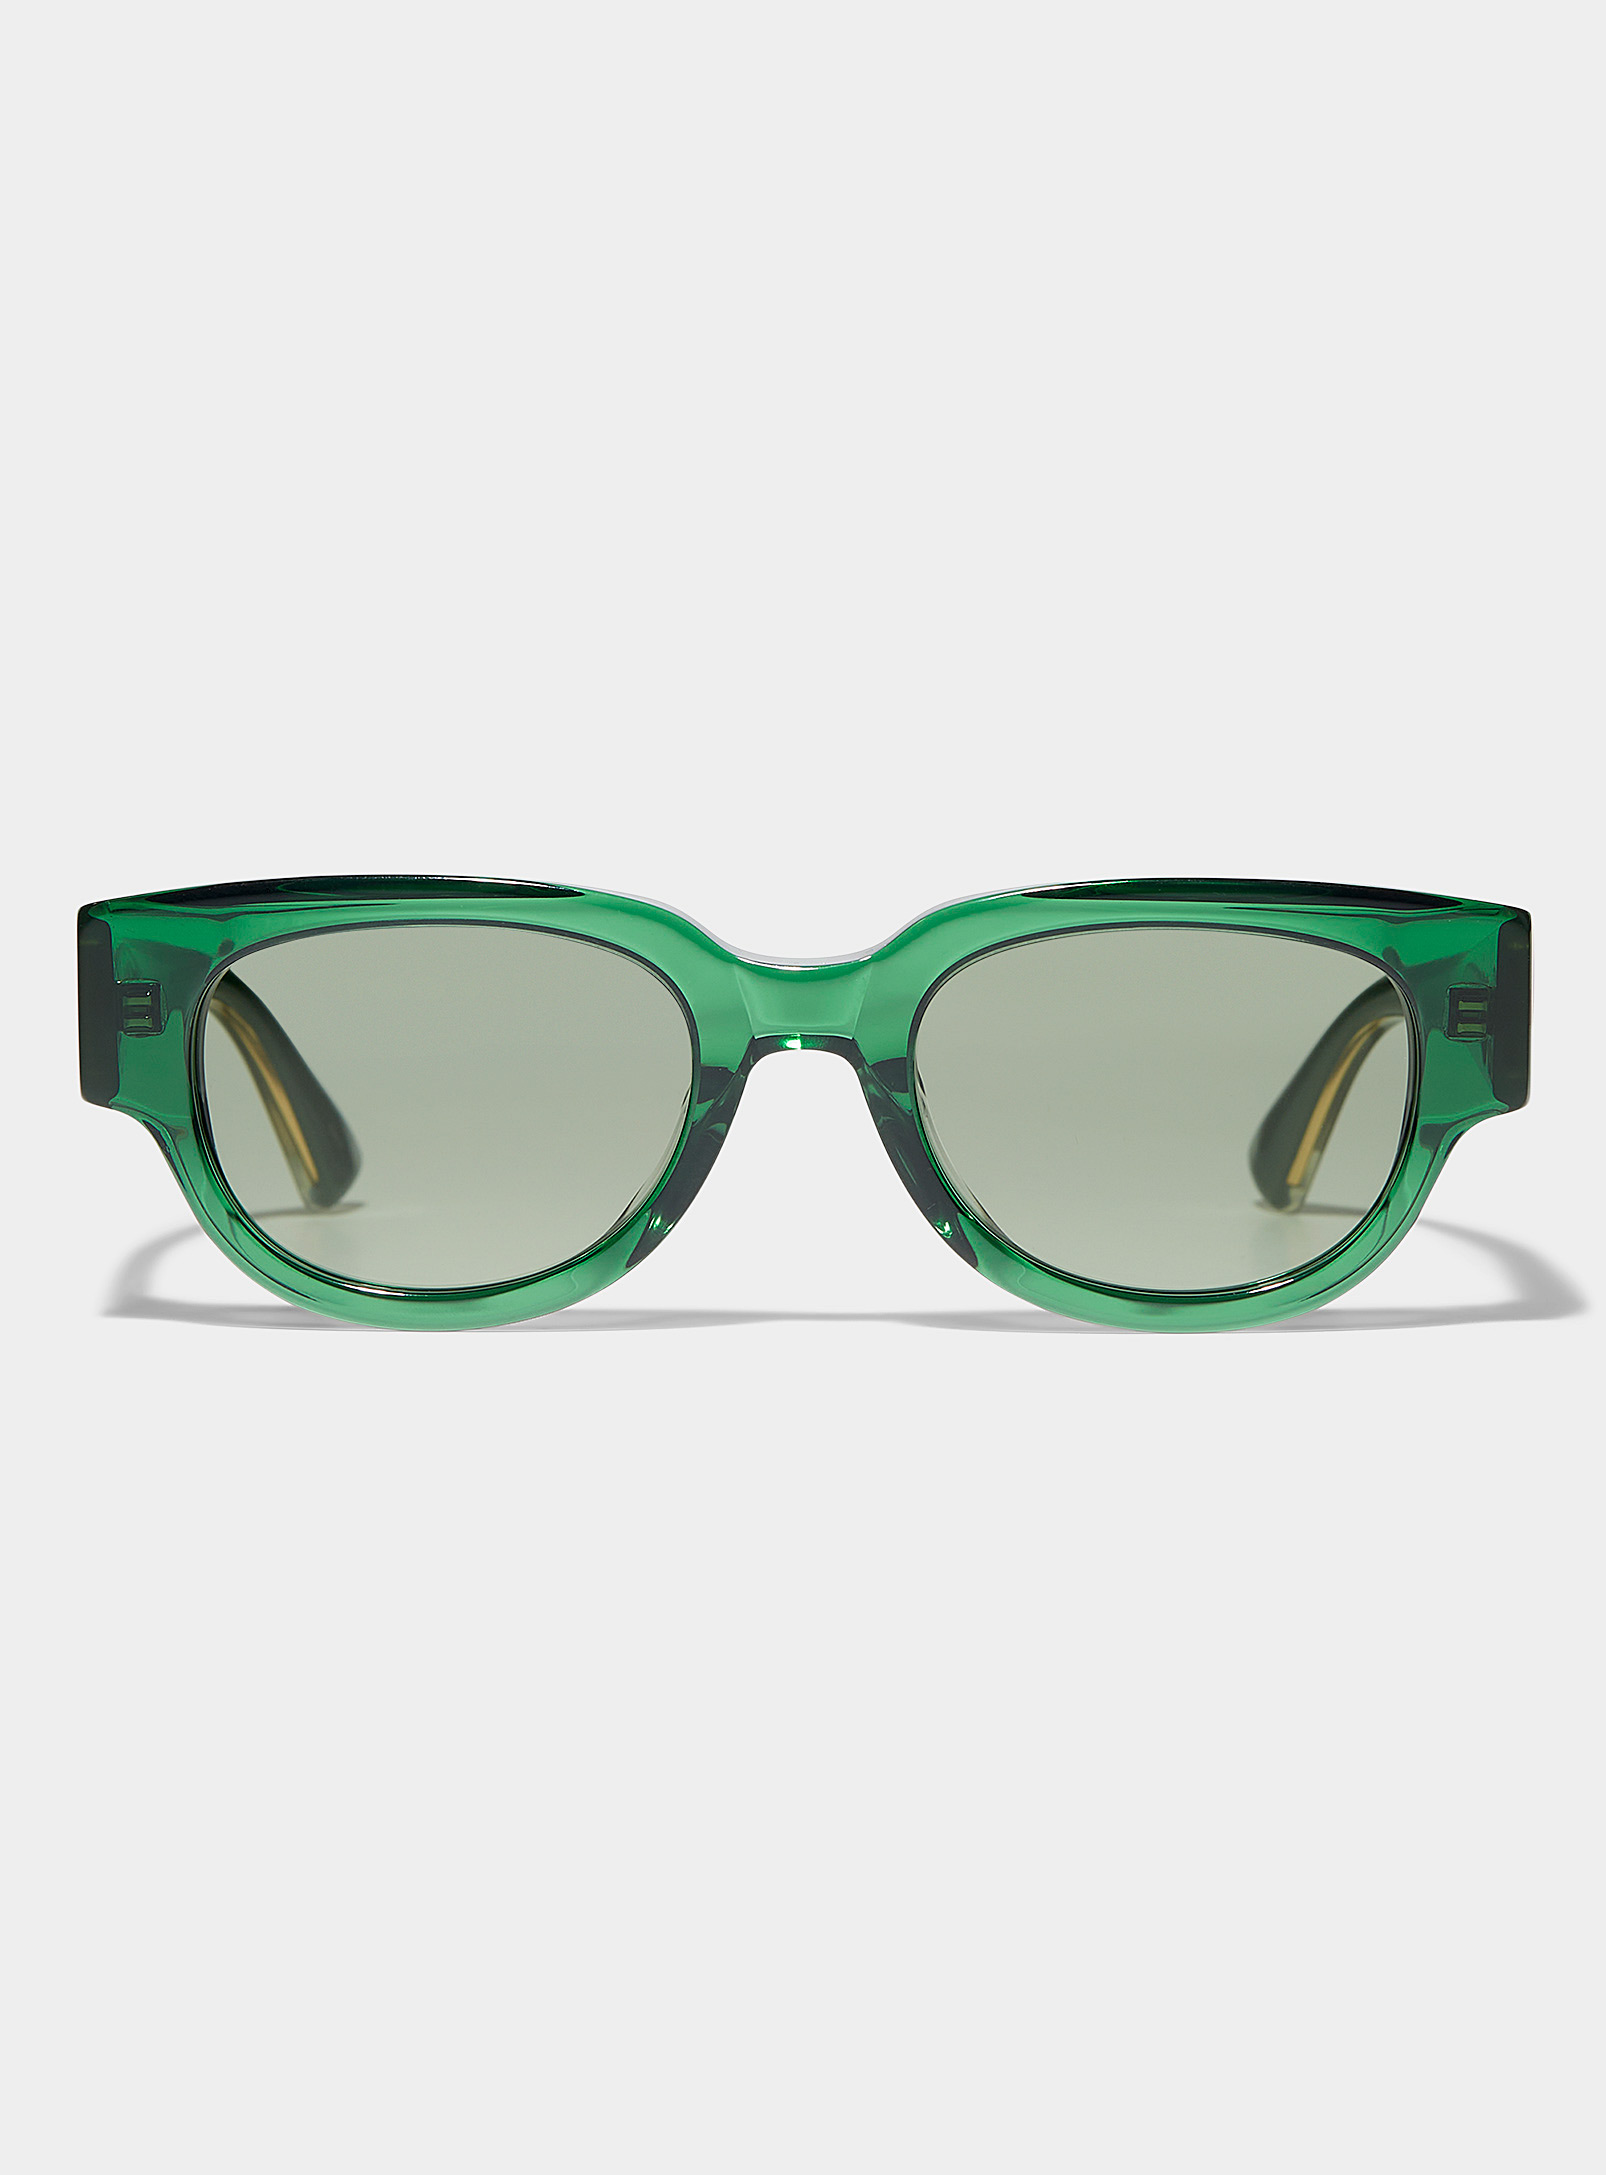 Bottega Veneta - Les lunettes de soleil carrées vertes